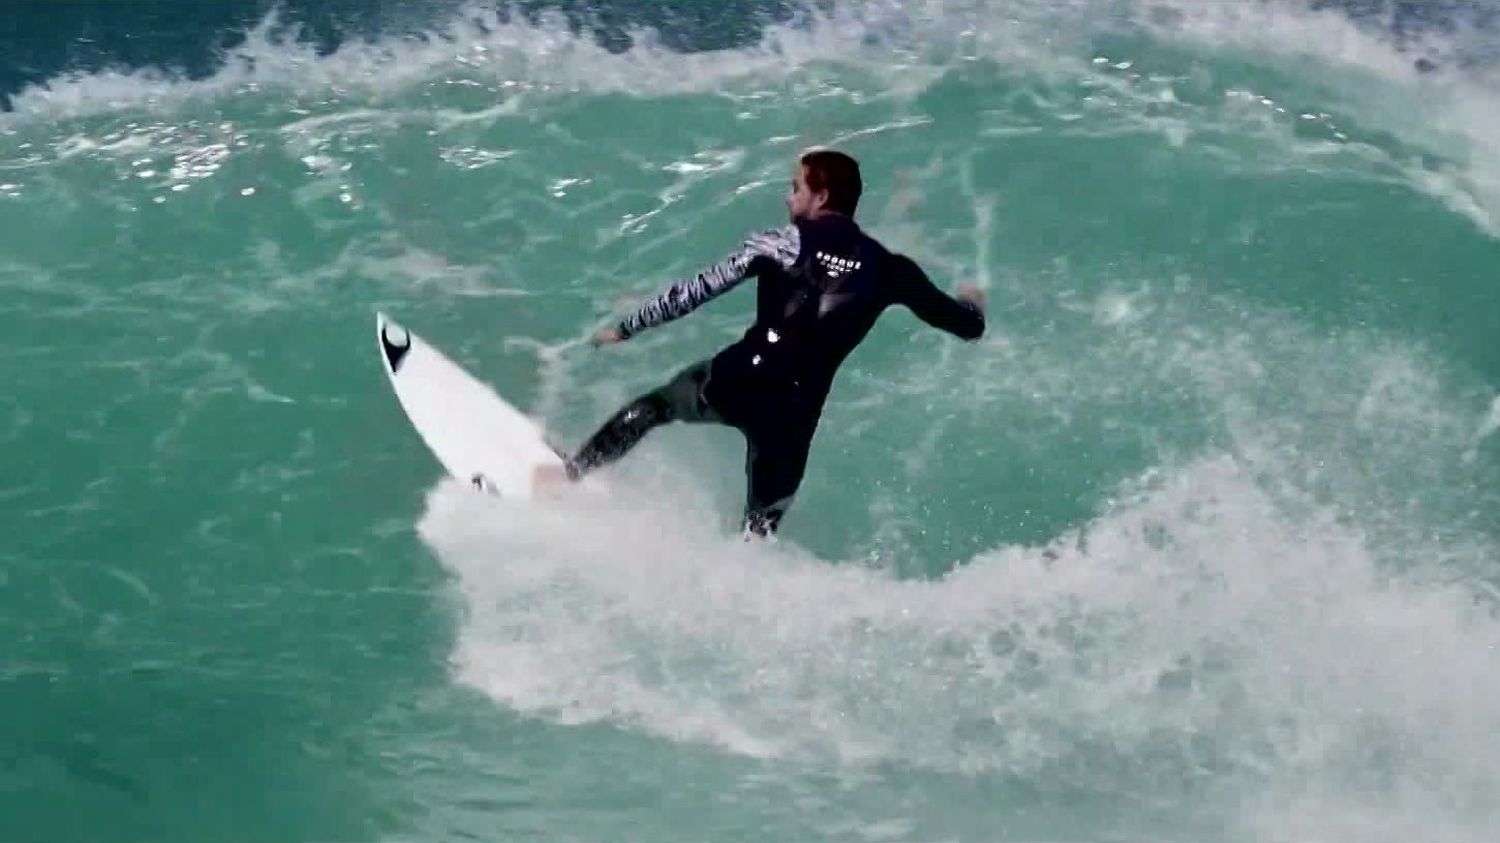 À La Rochelle, une seconde vie pour les combinaisons de surf usagées